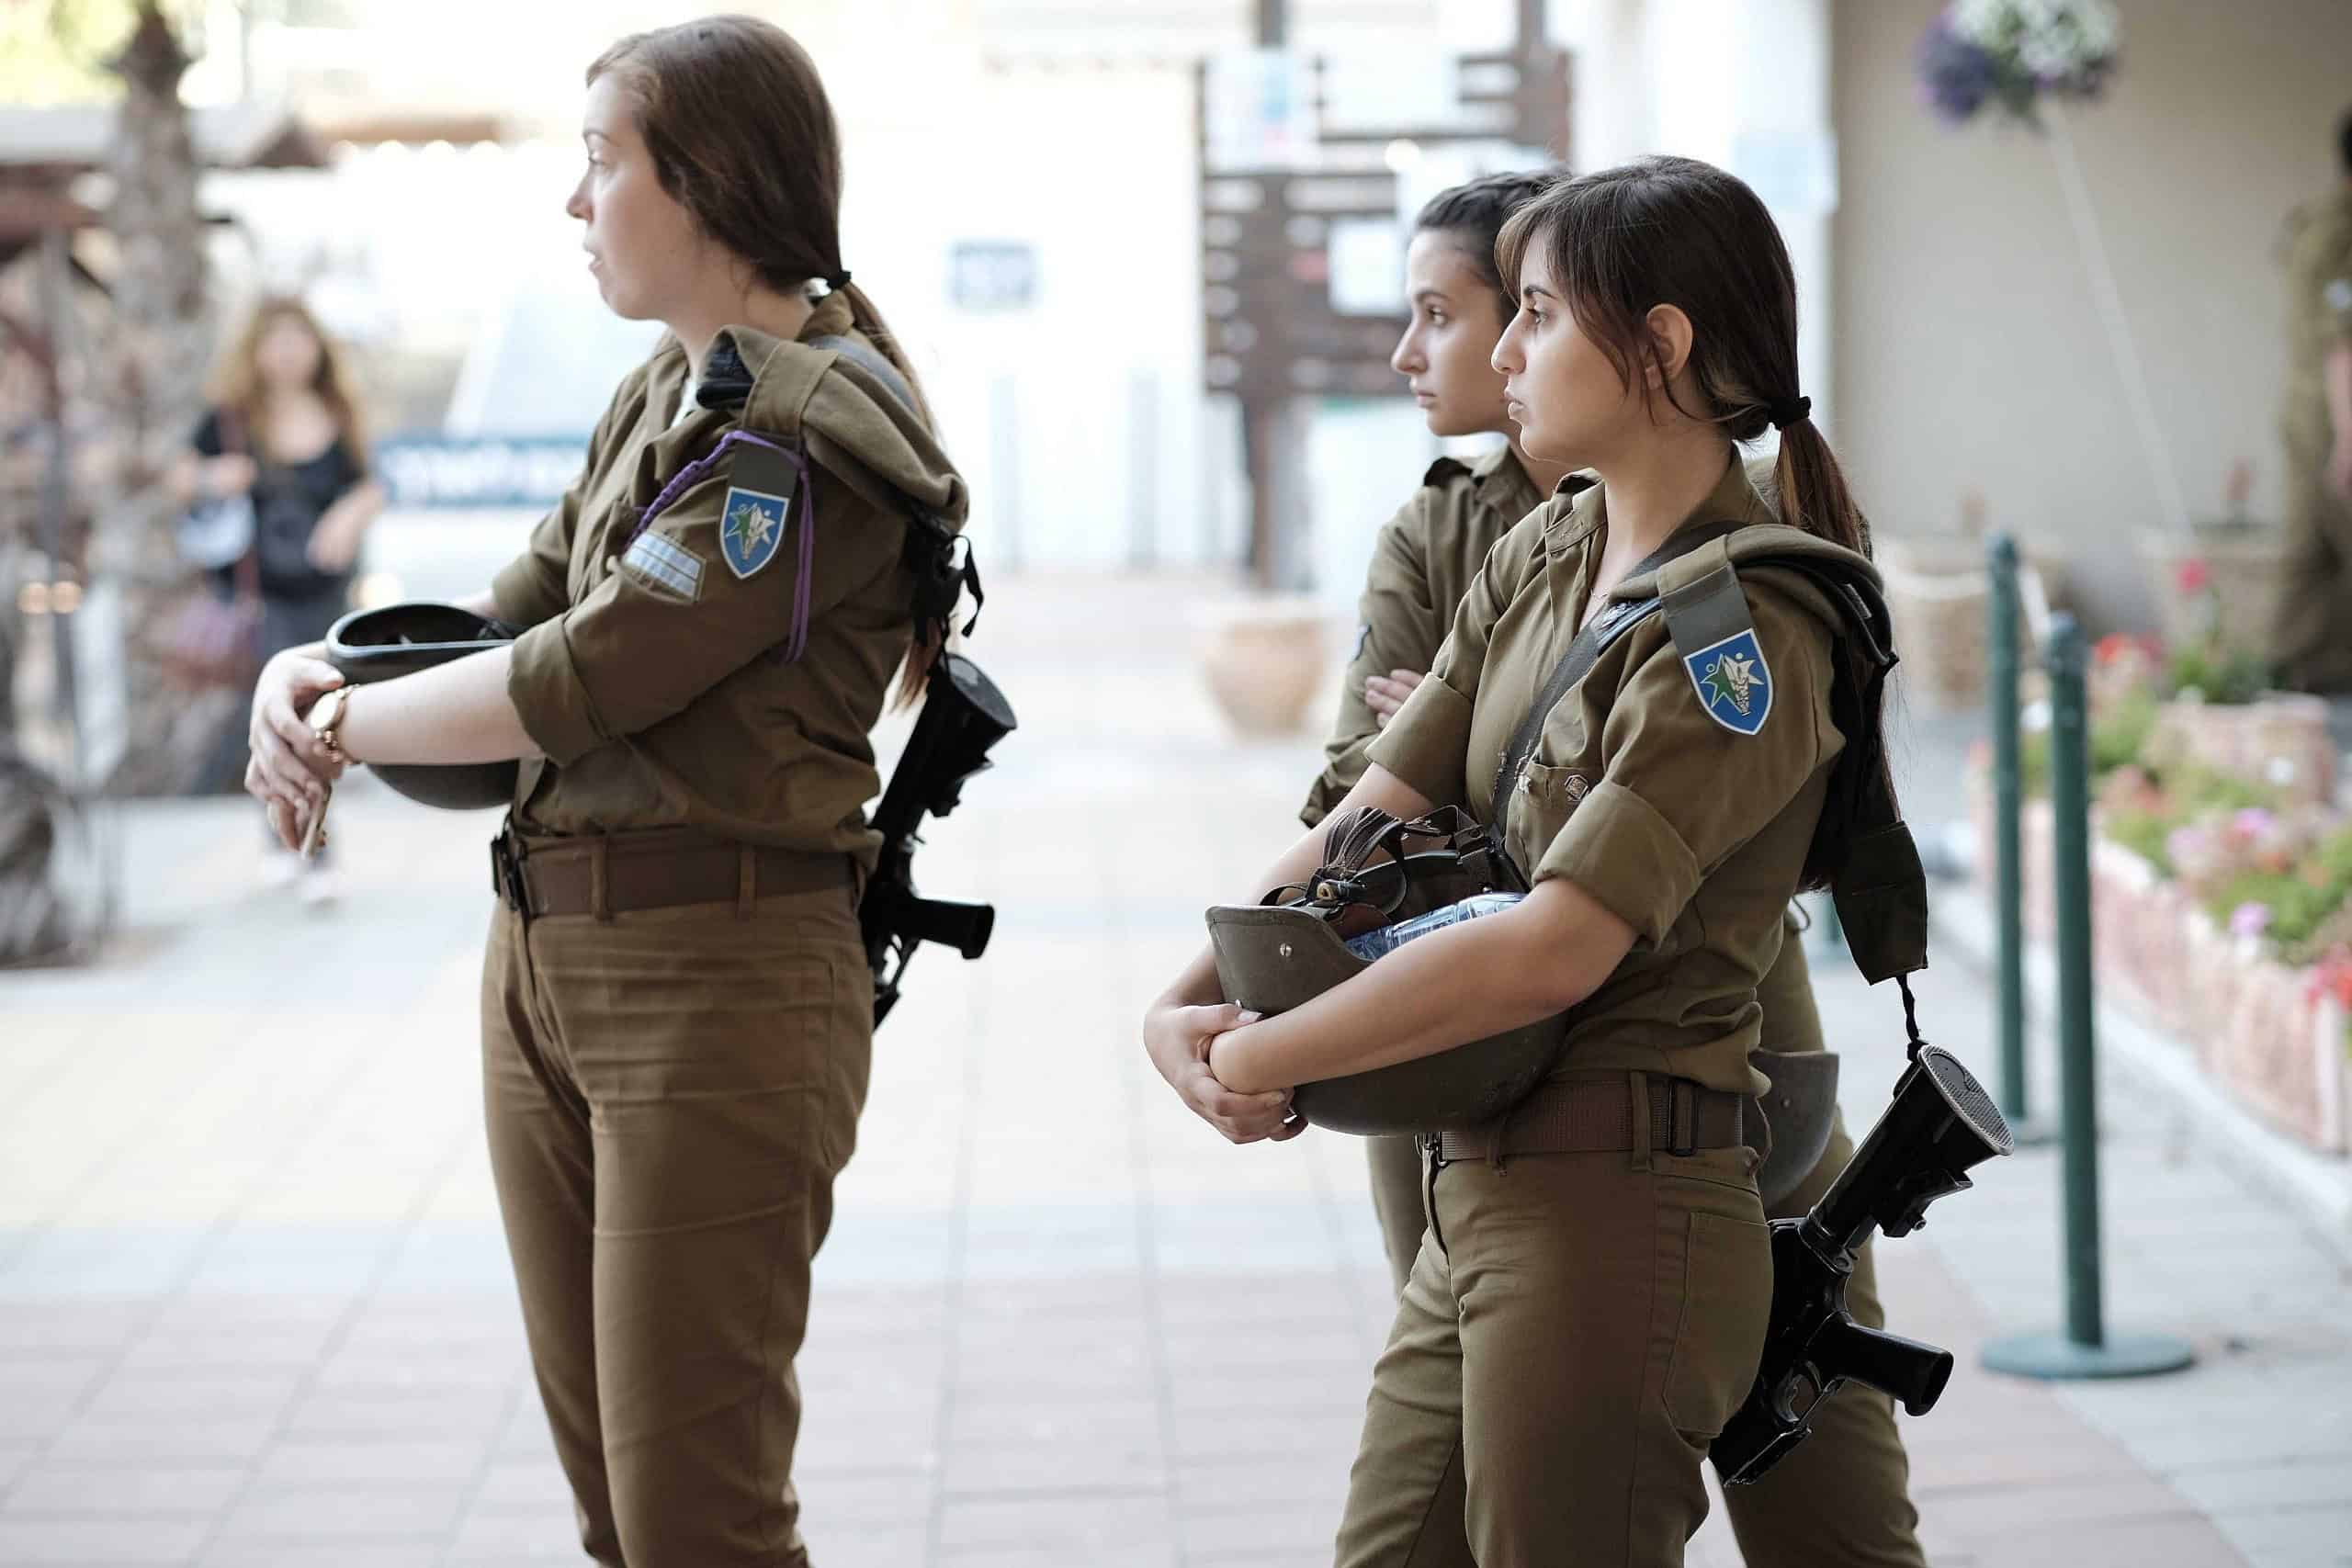 Combat units lead surge in IDF recruitment